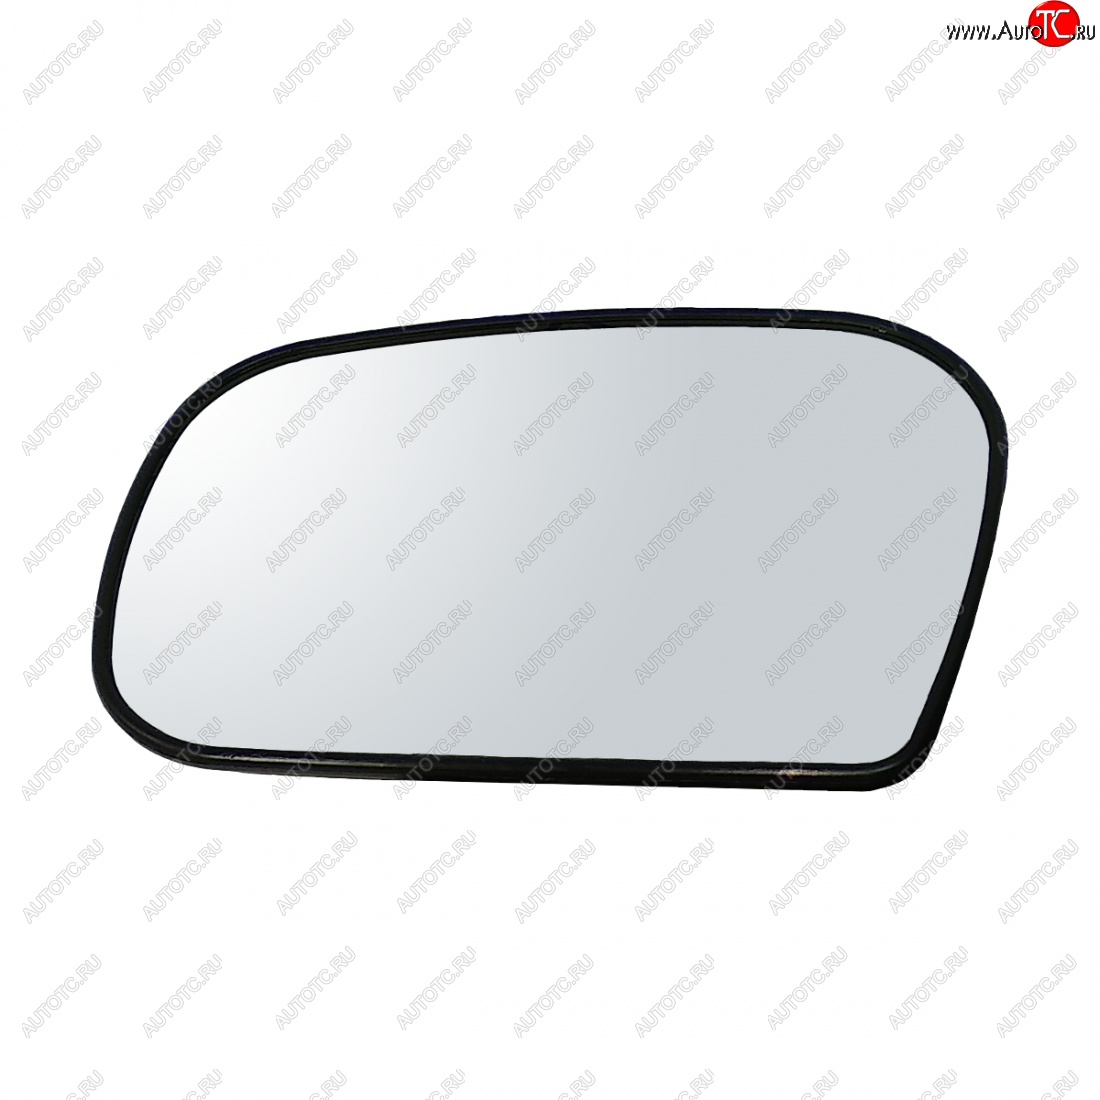 339 р. Левый зеркальный элемент (обогрев/под круг. моторедуктор в корпус ДААЗ) Автоблик2  Chevrolet Niva  2123 (2009-2020), Лада 2123 (Нива Шевроле) (2002-2021) (с антибликовым покрытием)